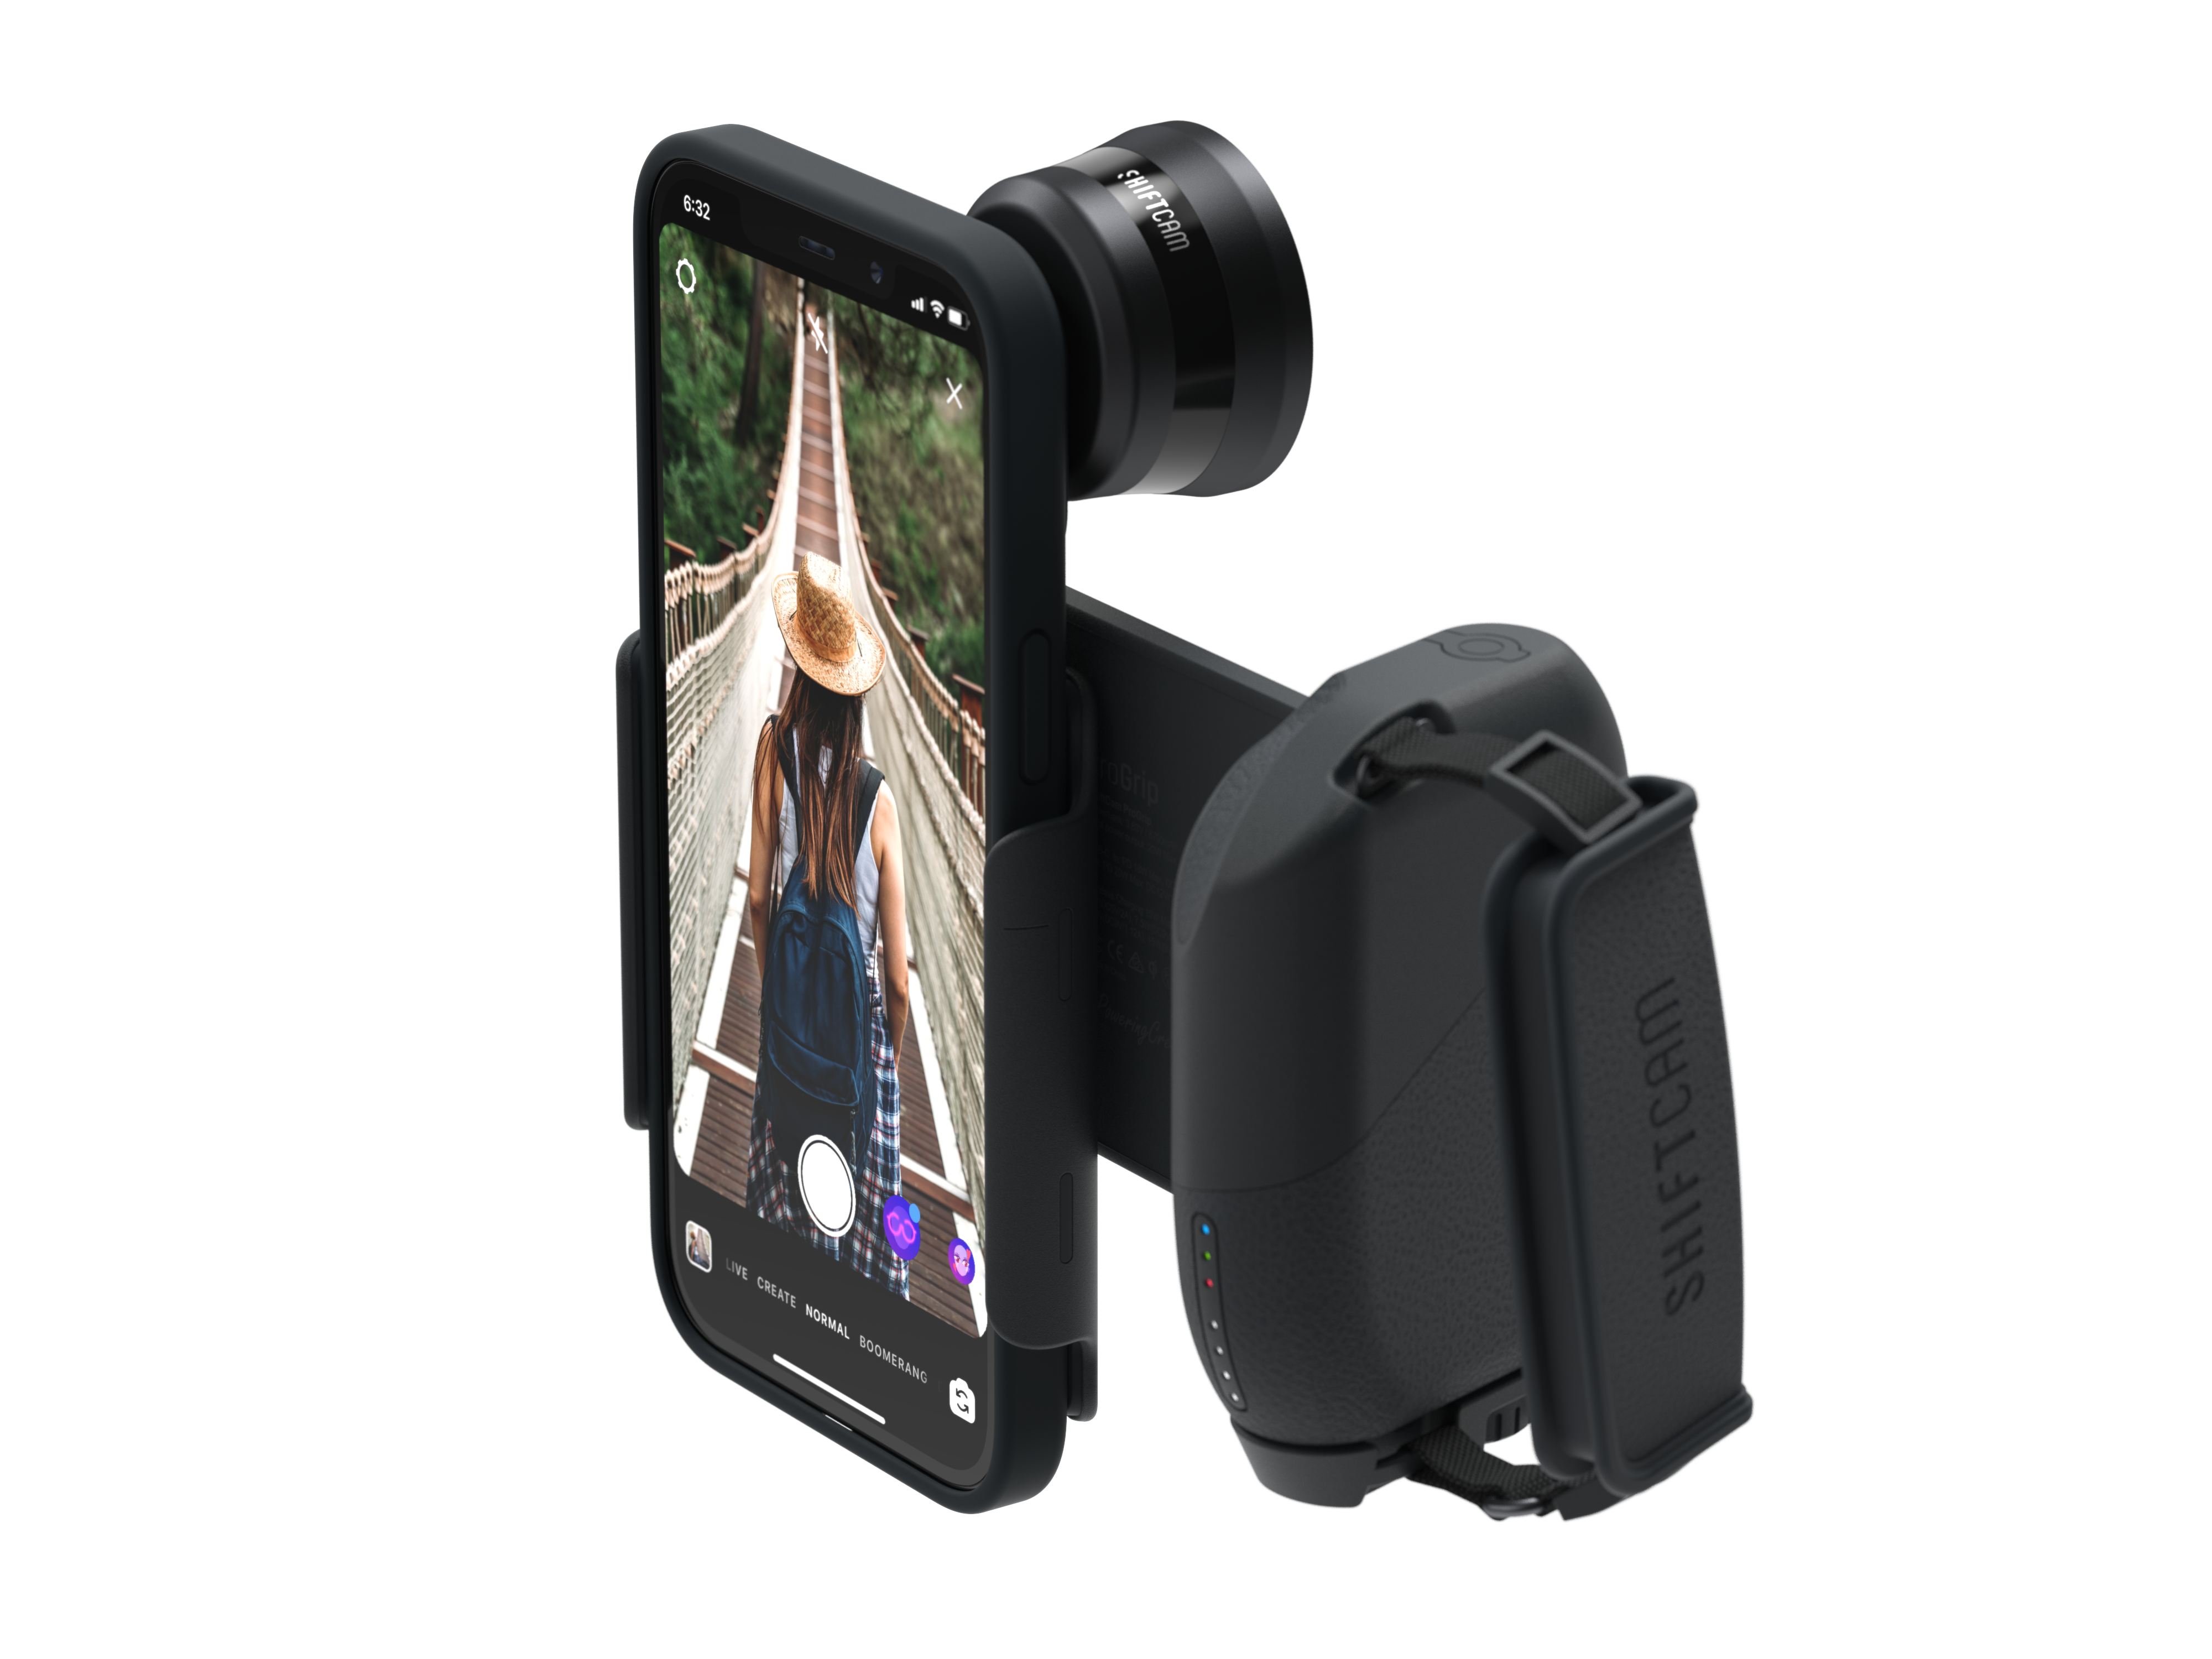 Charcoal, ProGrip - SHIFTCAM Smartphone Kit Charcoal, für passend Kameragriff, Smartphones alle Starter